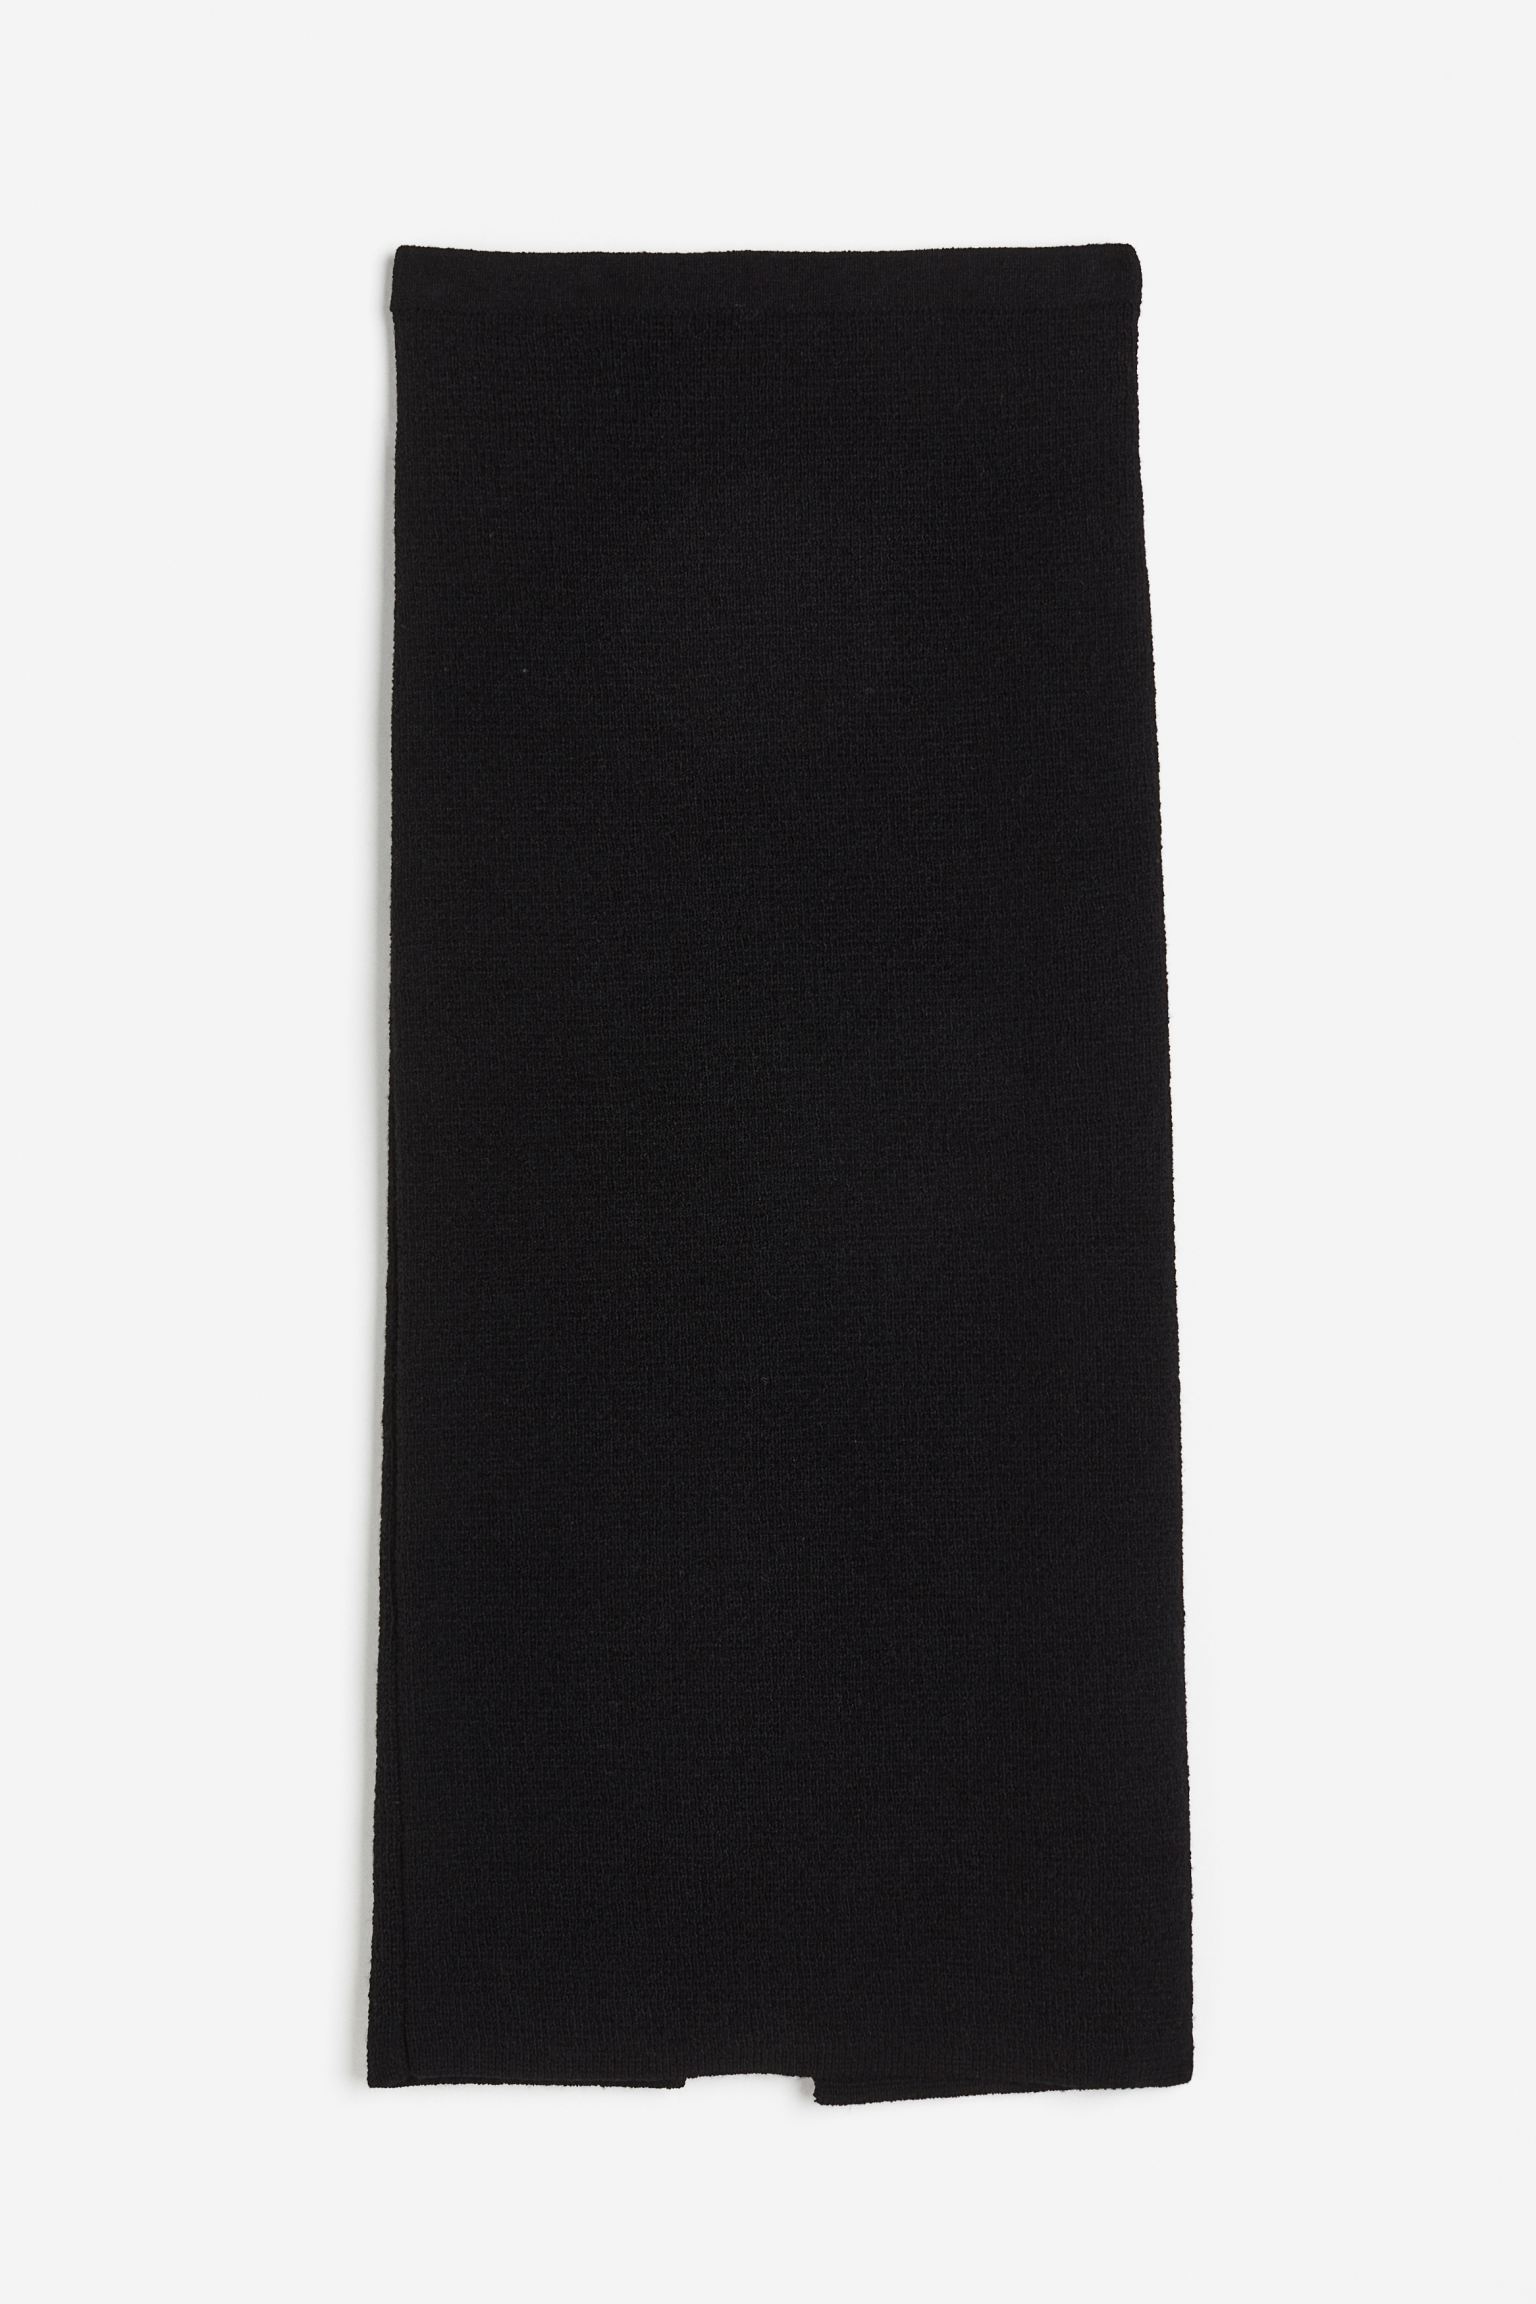 Юбка H&M Knit Column, черный арабская длинная юбка с вышивкой и поясом женская длинная юбка мусульманская этническая длинная юбка благородная роскошная повседневная